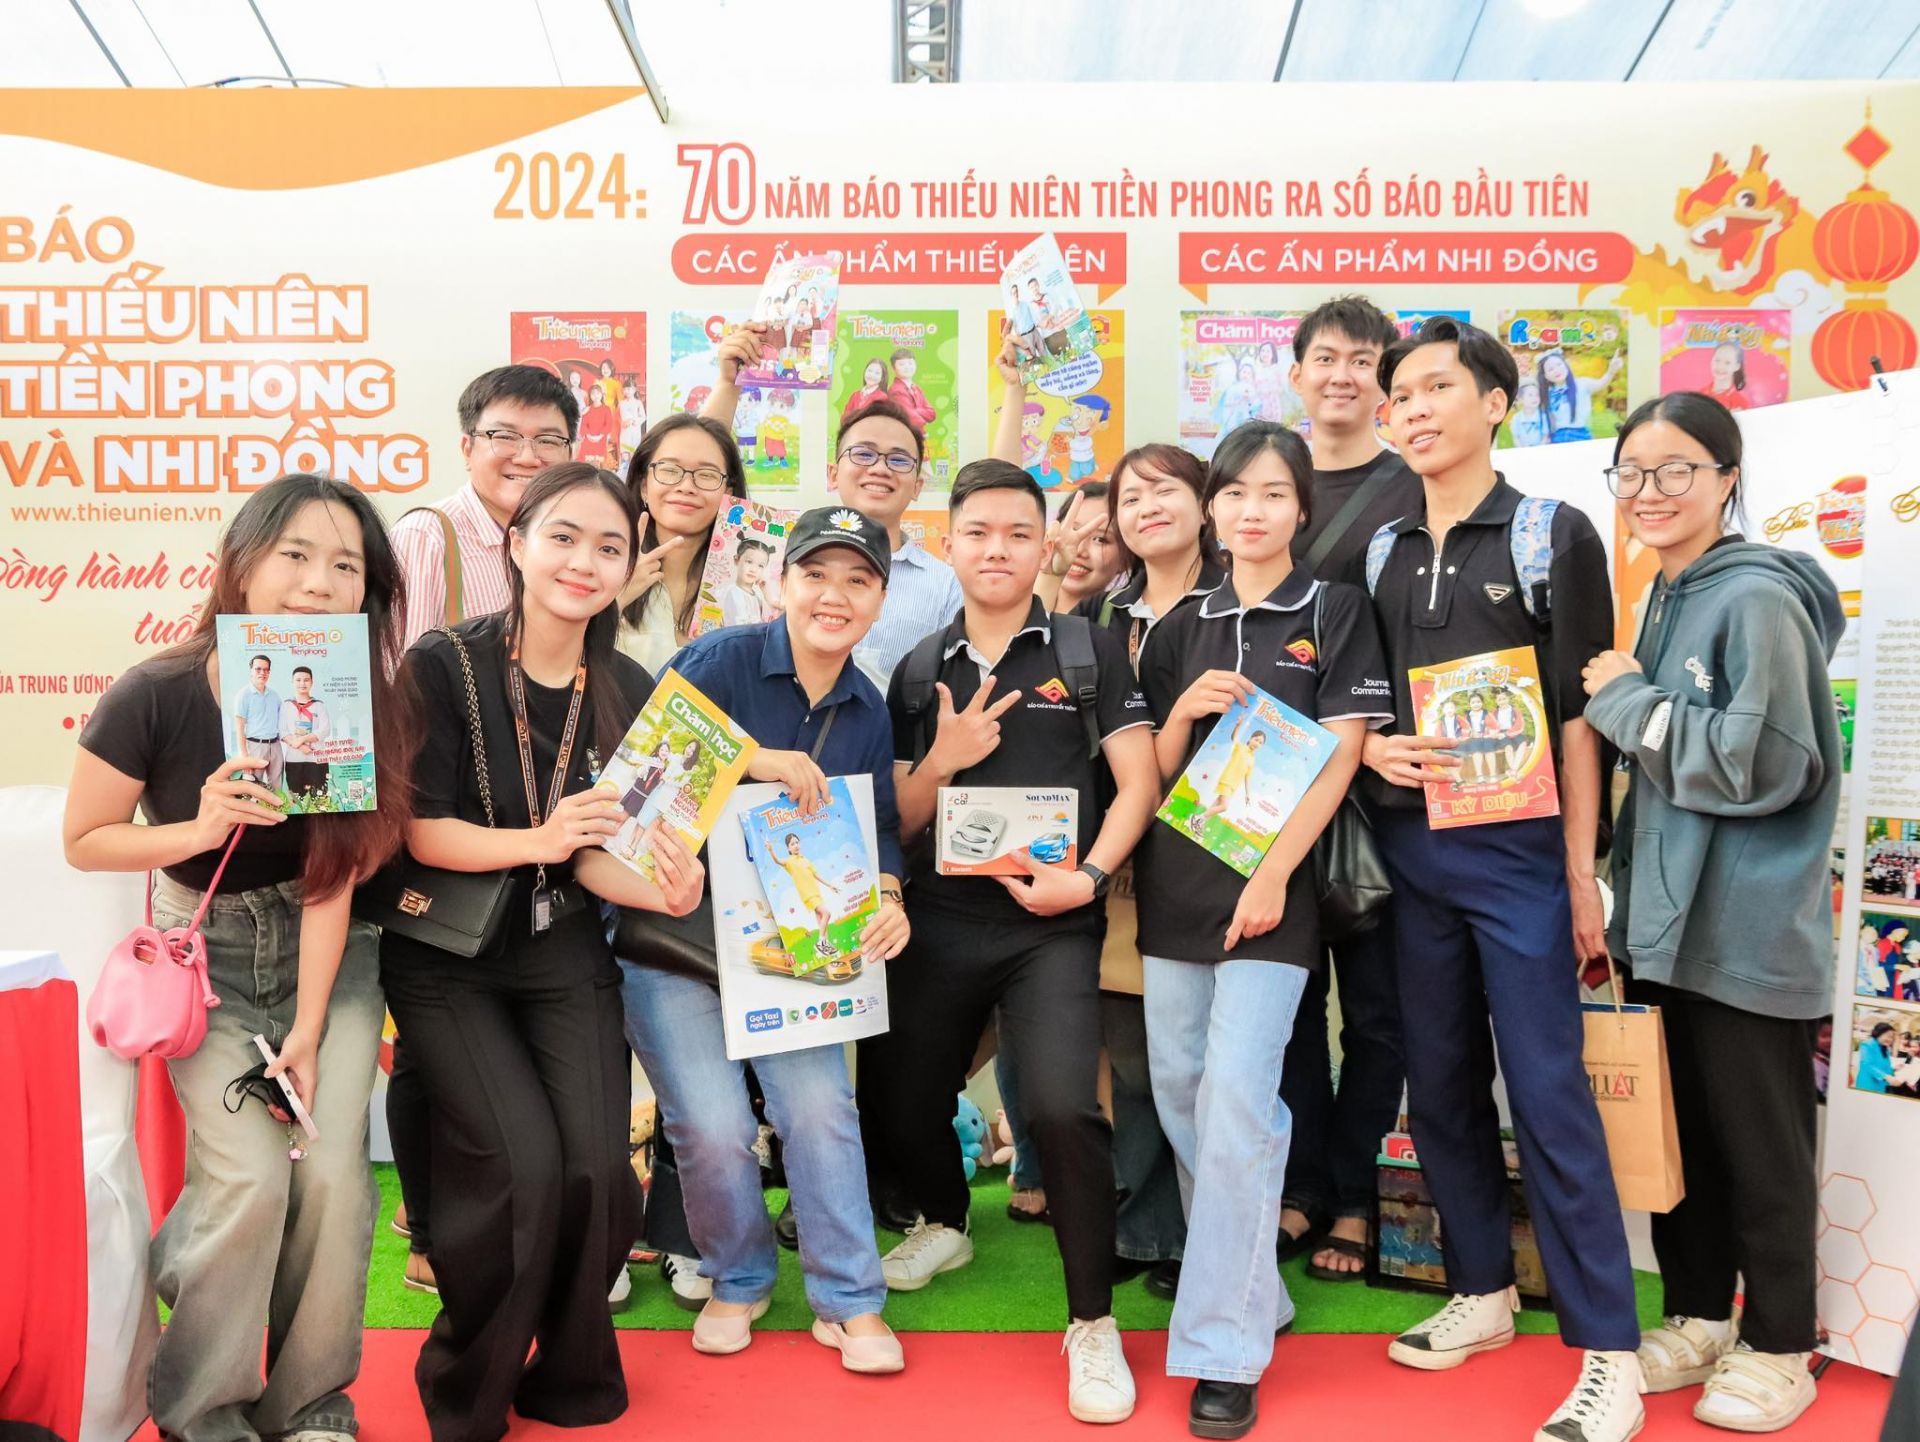 Gian trưng bày của báo Đội cũng thu hút sự quan tâm của các bạn sinh viên theo học ngành Báo chí trên địa bàn TP. Hồ Chí Minh.